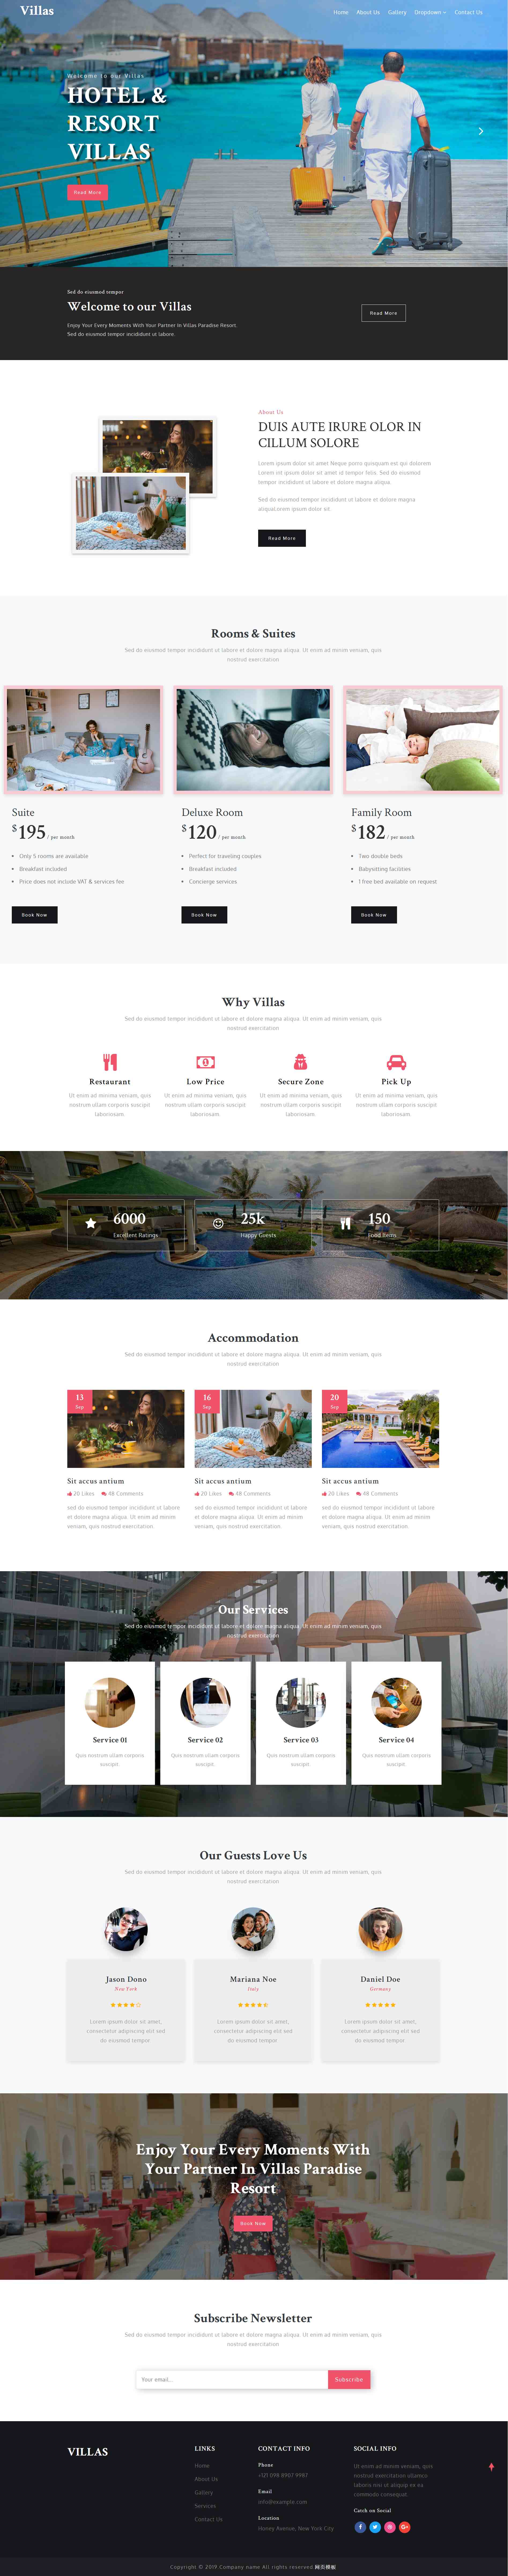 红色简洁风格的酒店度假别墅企业网站源码下载